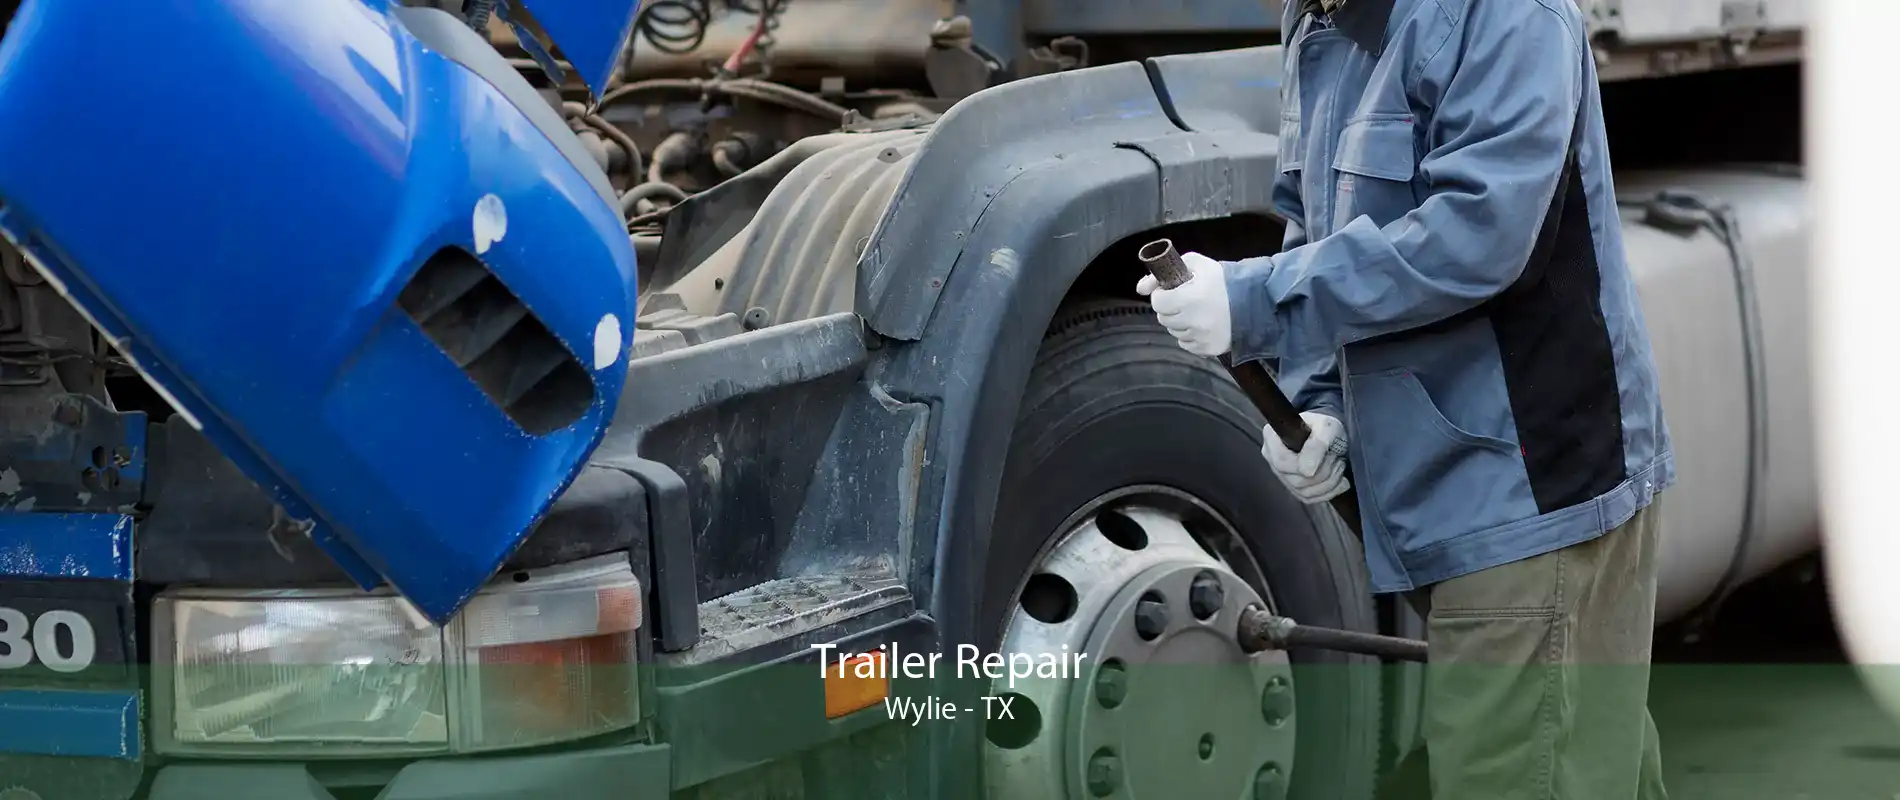 Trailer Repair Wylie - TX